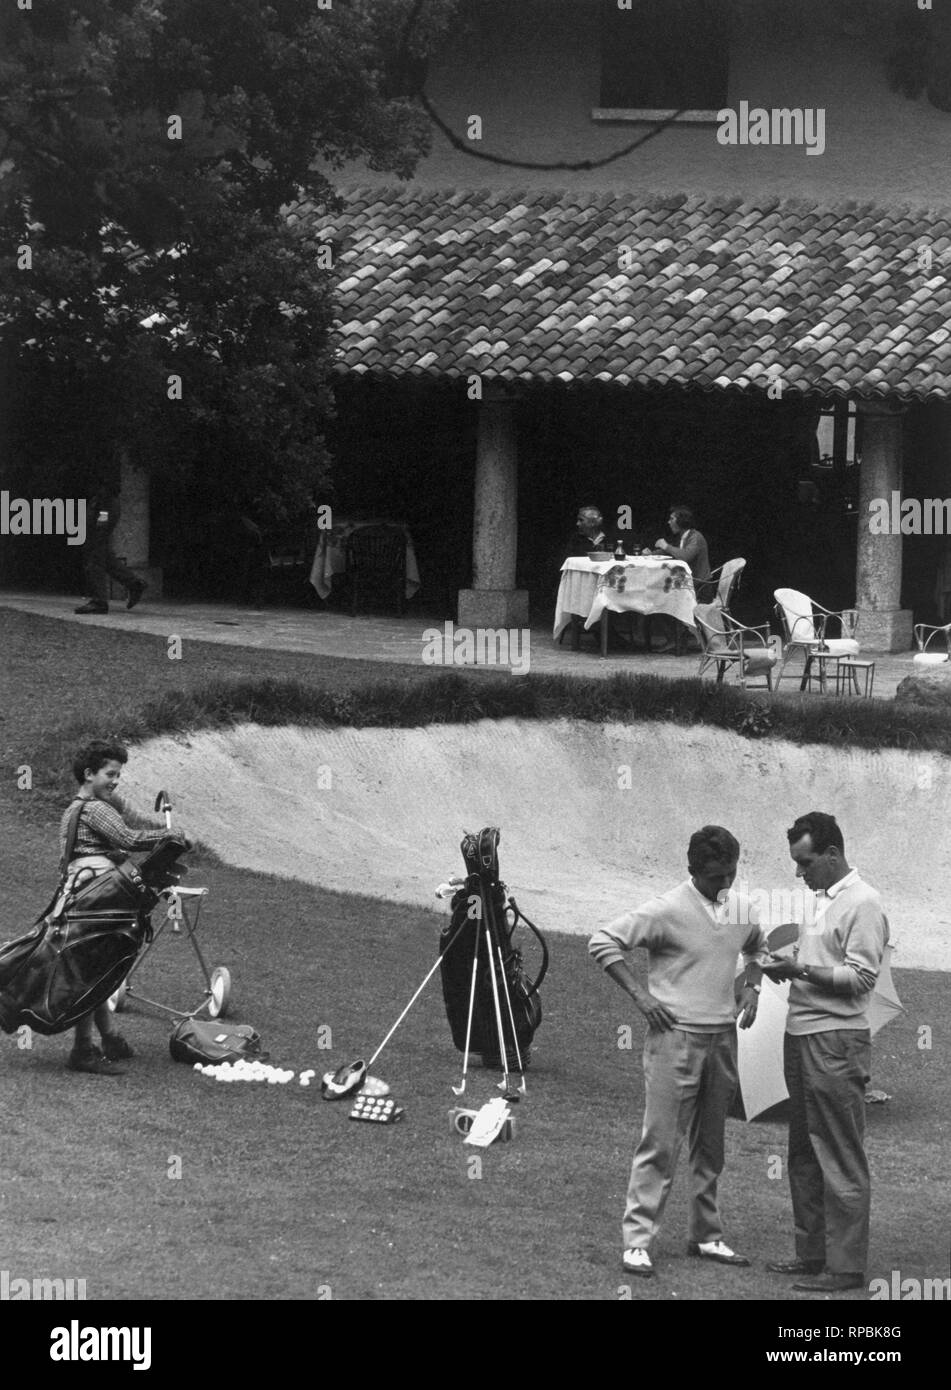 Club de golf menaggio, 1964 Foto de stock